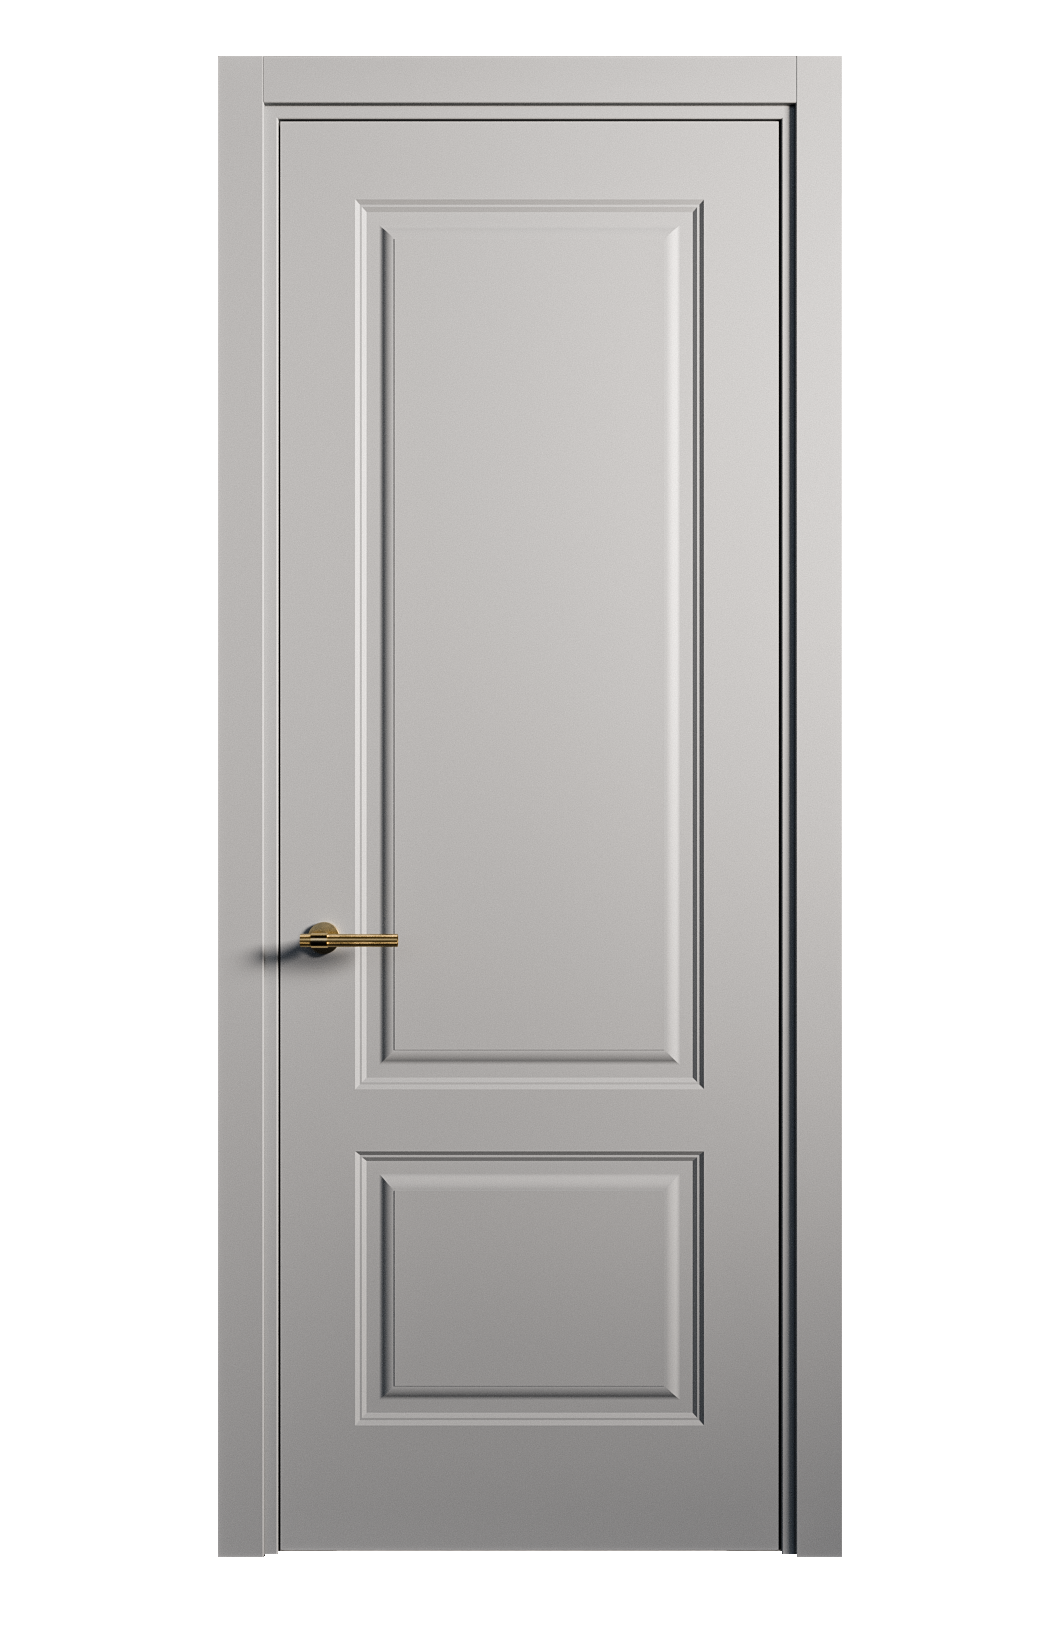 Межкомнатная дверь Вита-1 глухая эмаль ral 7040 26241